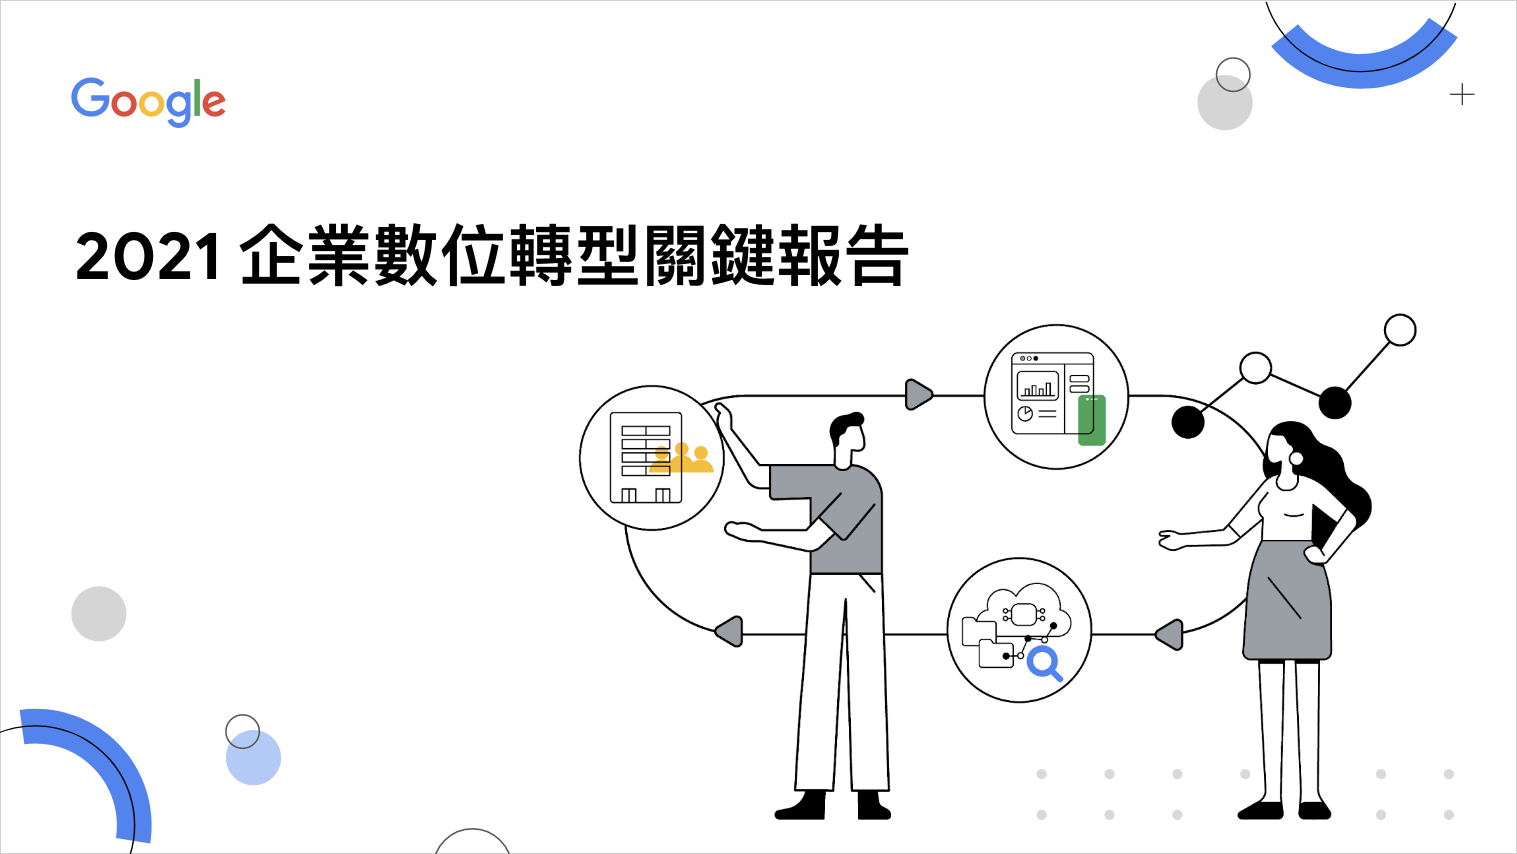 2021 台灣企業數位轉型關鍵報告 | 報告書設計作品